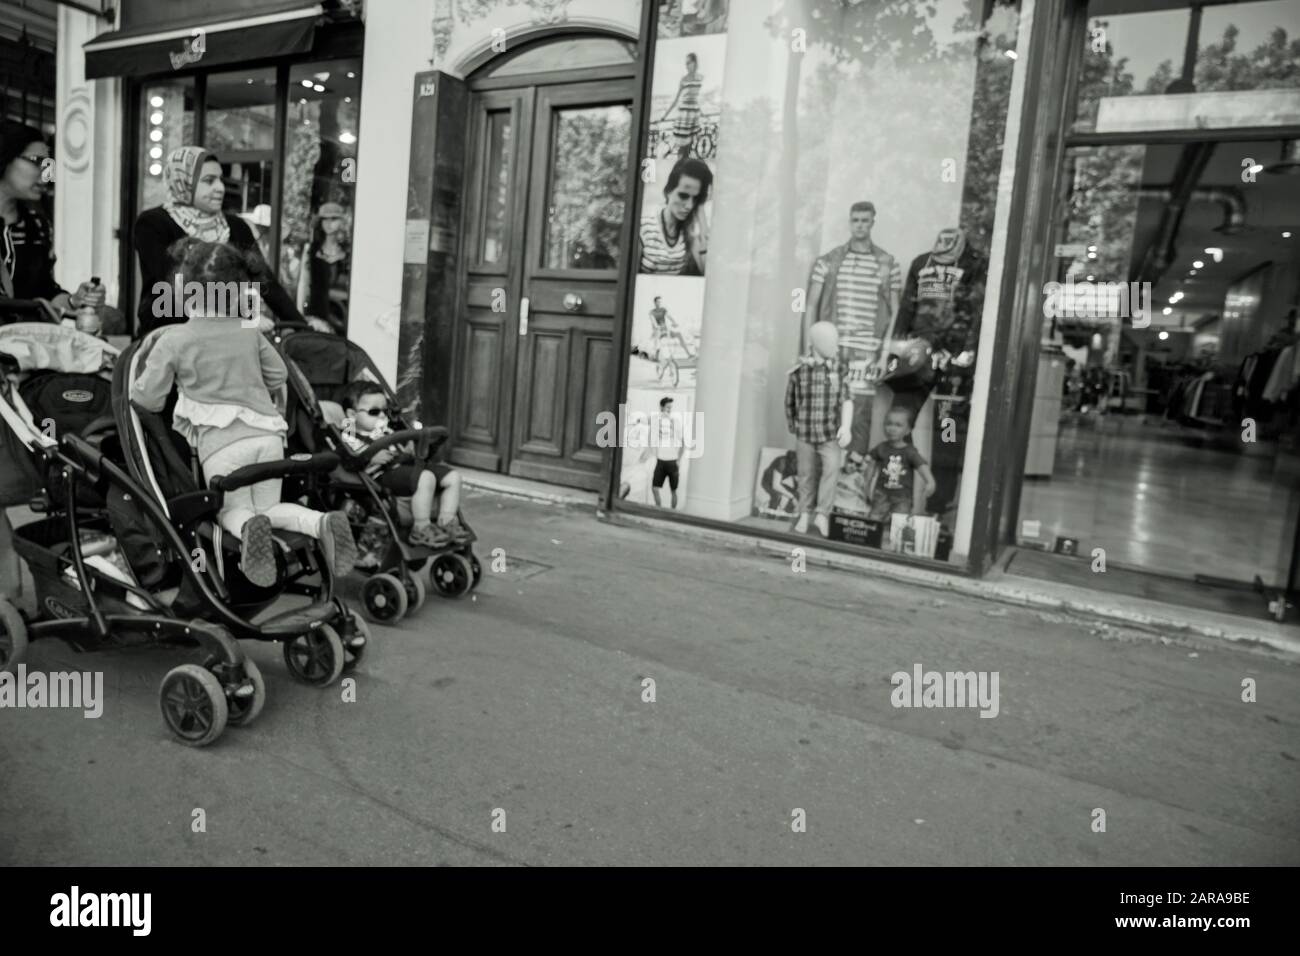 Niños en cochecitos, ventanal de ropa de moda, París, Francia, Europa Foto de stock